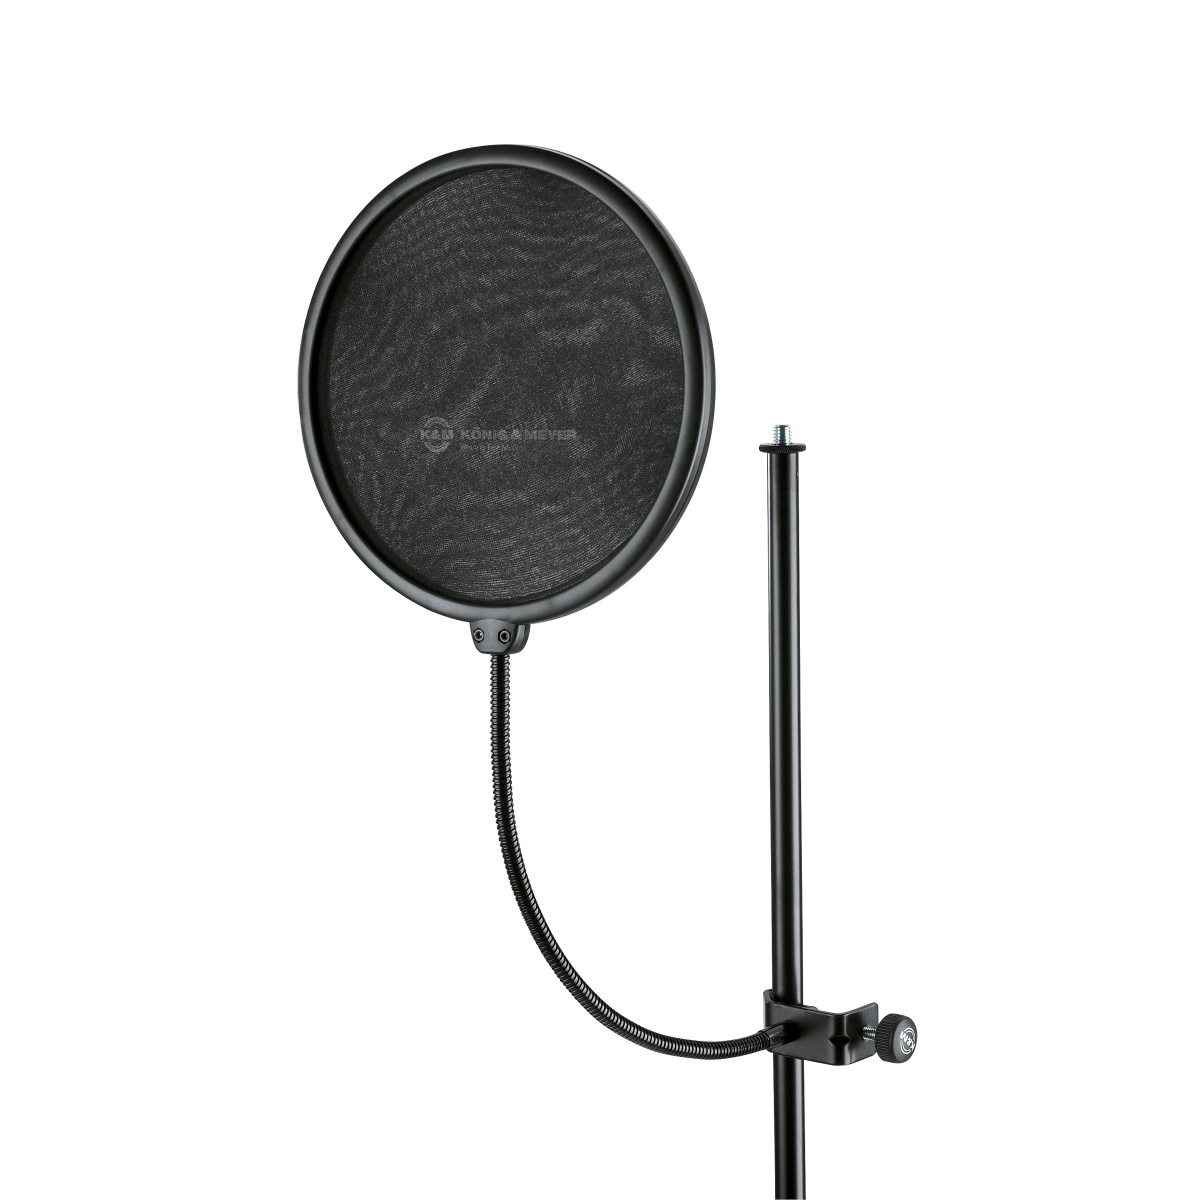 Аксессуары для микрофонов K&M 23966-000-55 акустический экран ls akp1 с держателем для микрофона на усиленной напольной стойке